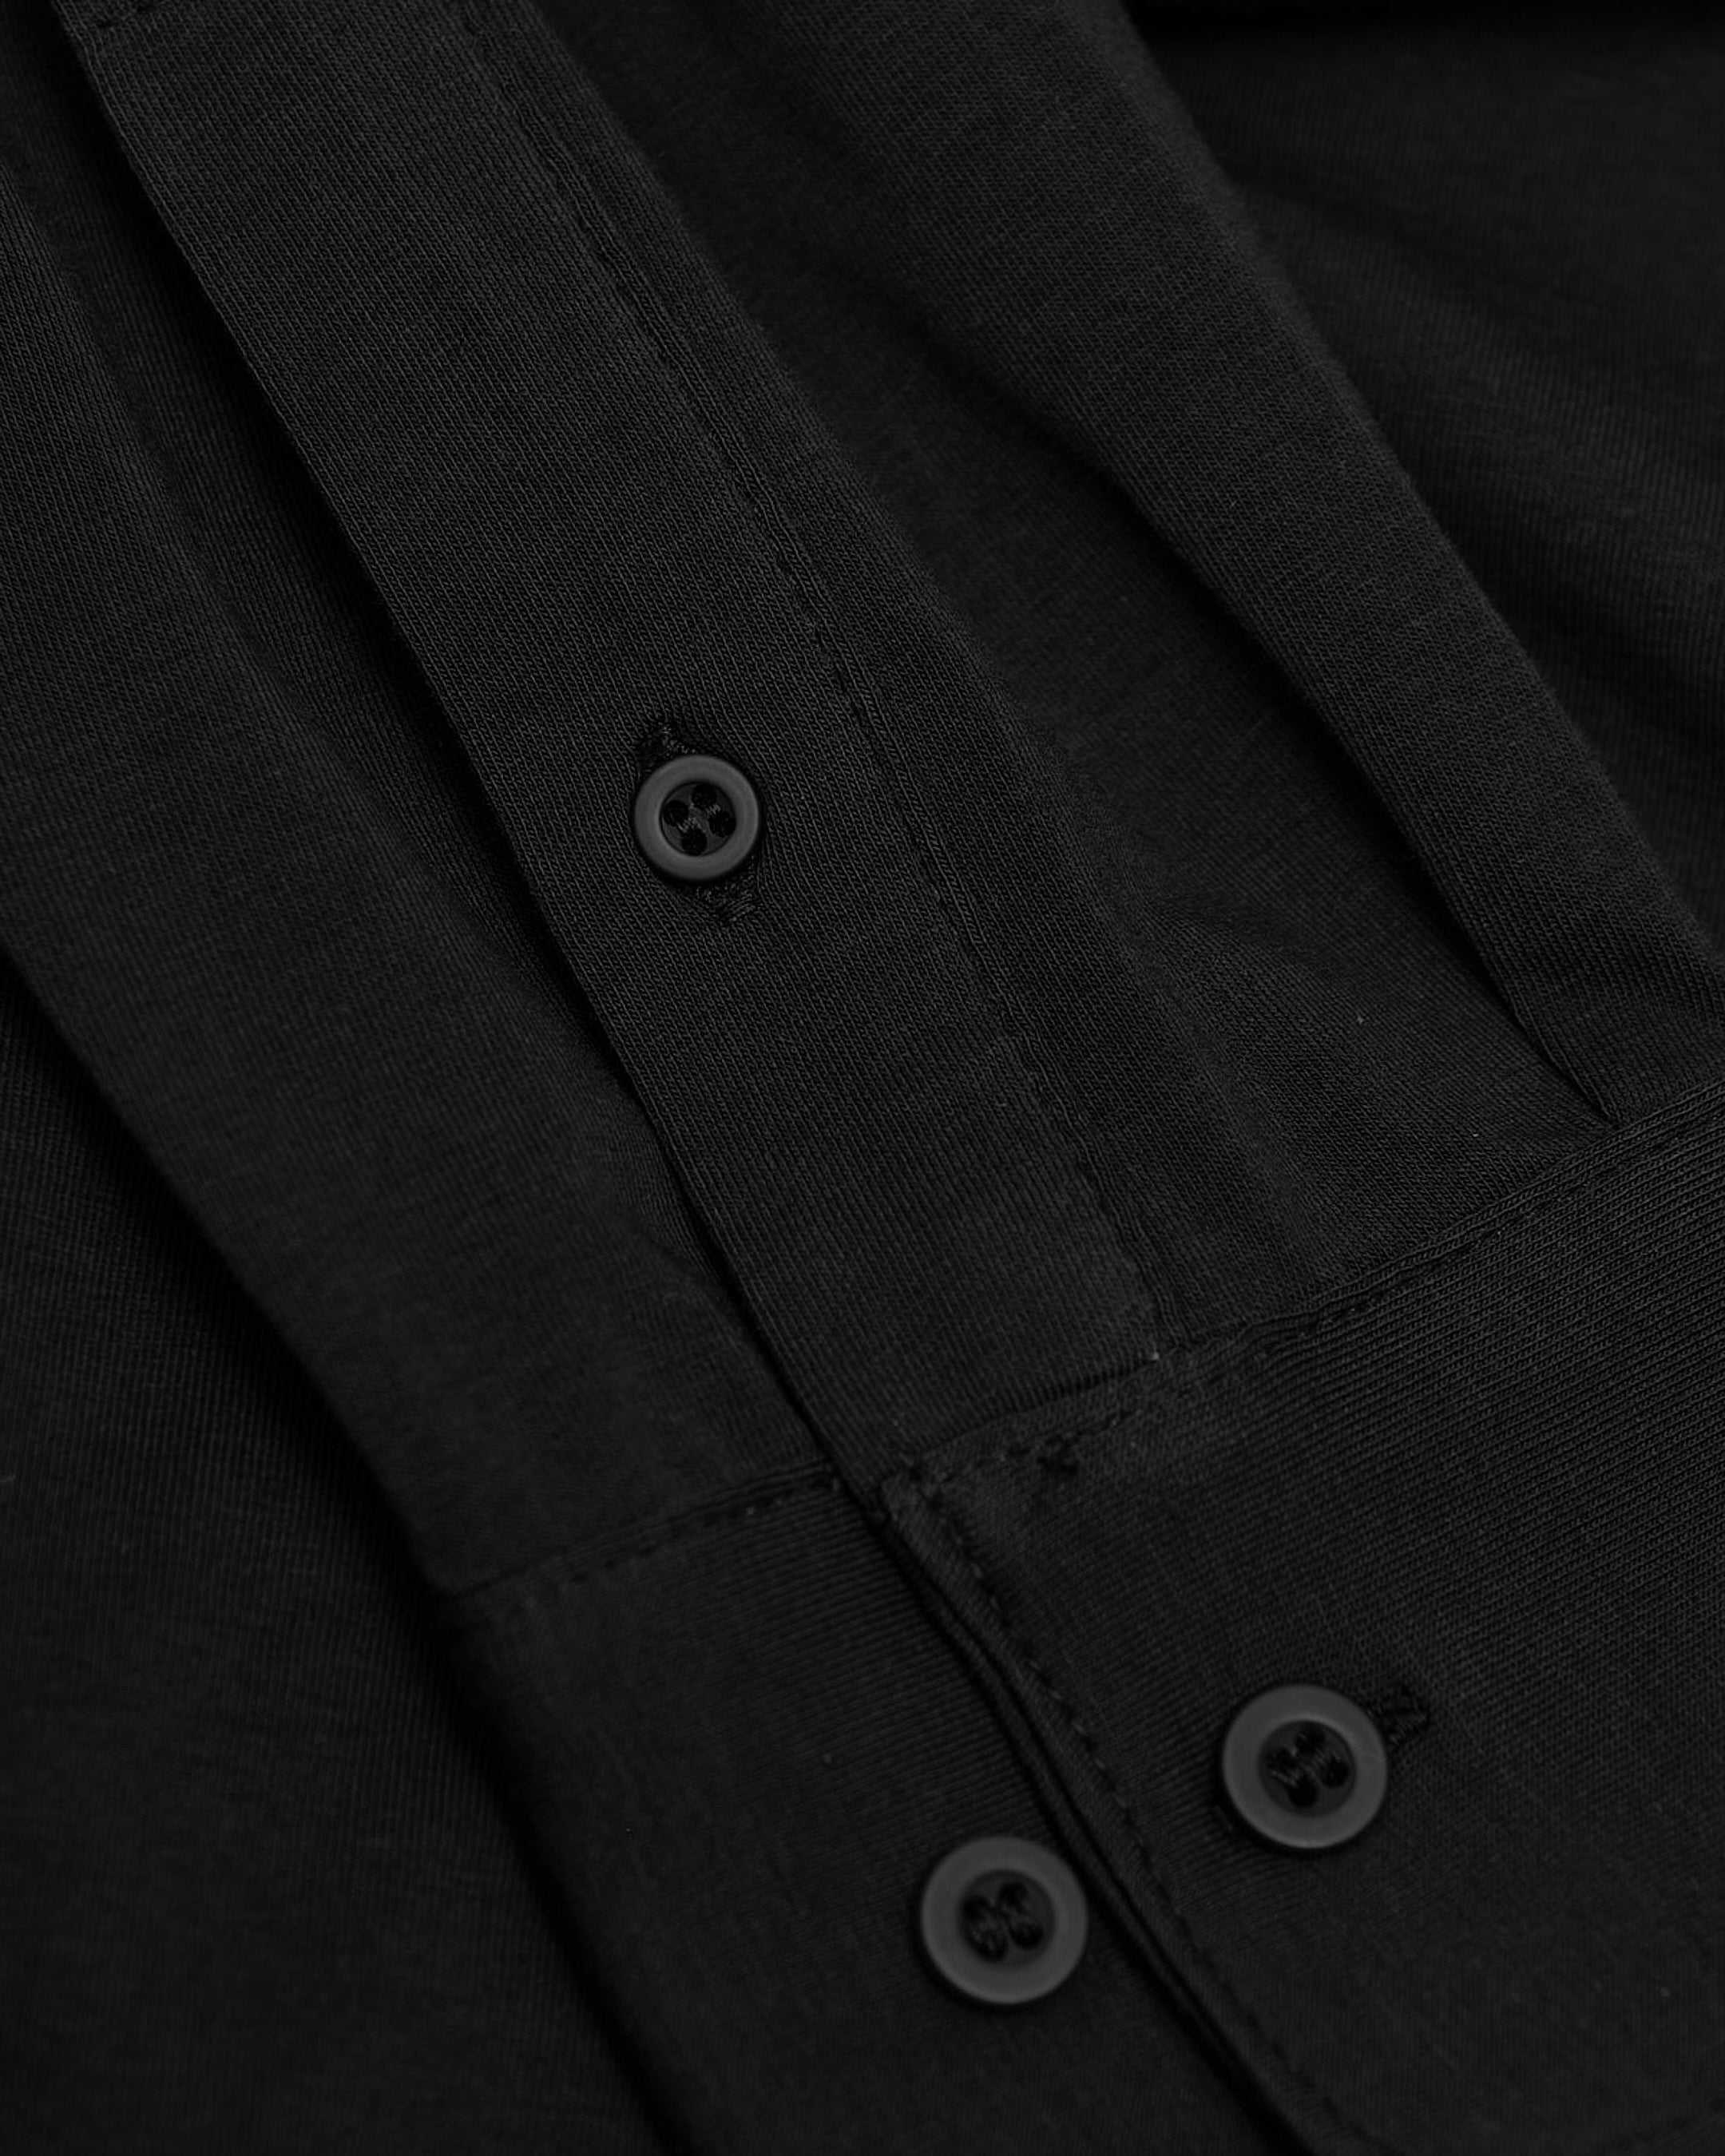 Black Comfort Long Sleeve Button Up Shirt | Black Comfort Long Sleeve ...